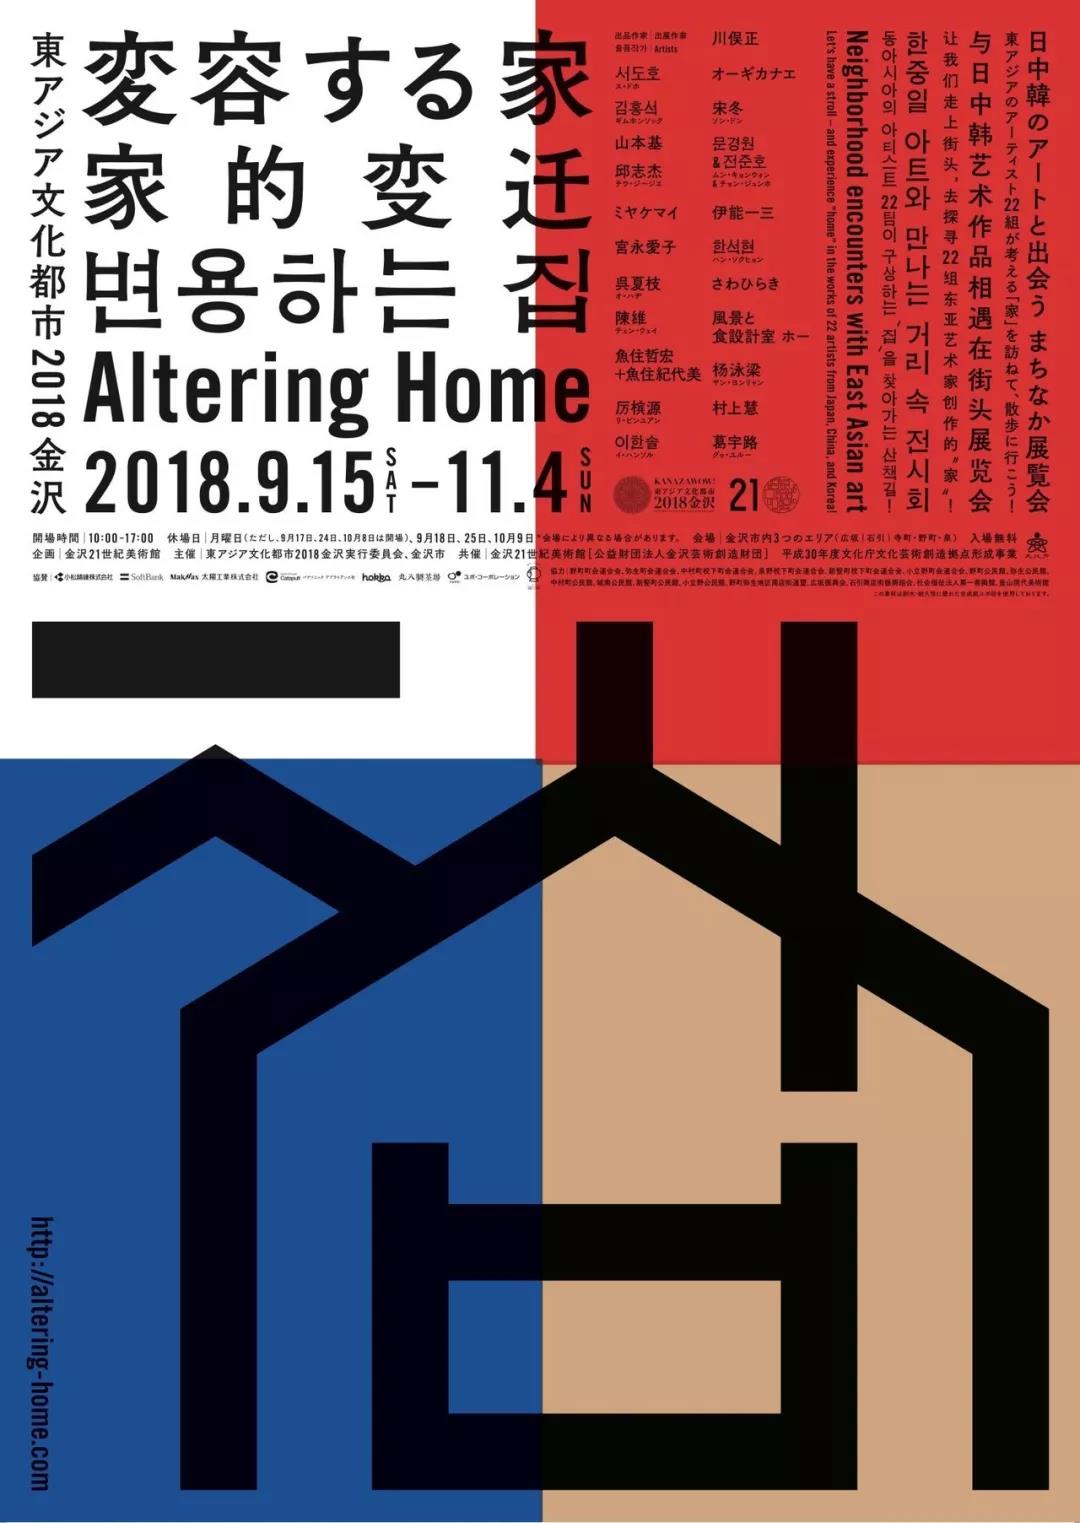 艺术展览主题的日本海报设计